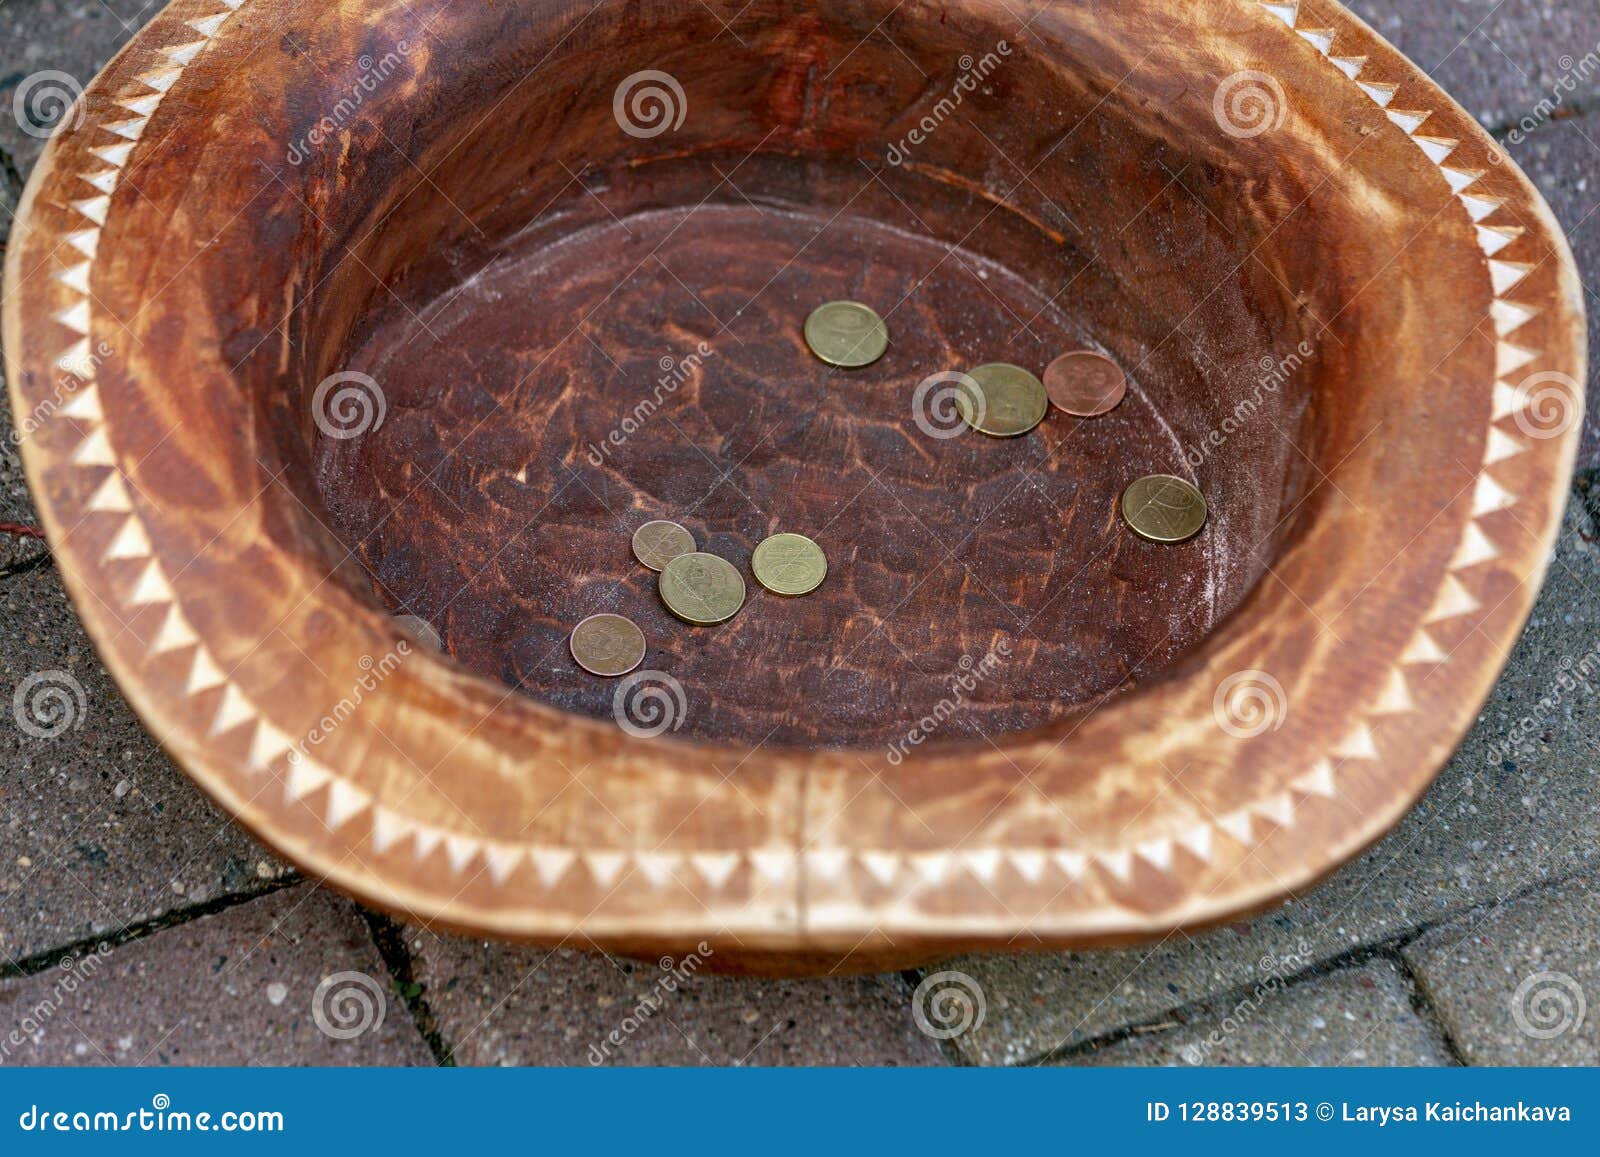 Монетки заработанные в шляпе Шляпа с деньгами Белорусские монетки в керамической шляпе Концепция бедности и денег делать на улице